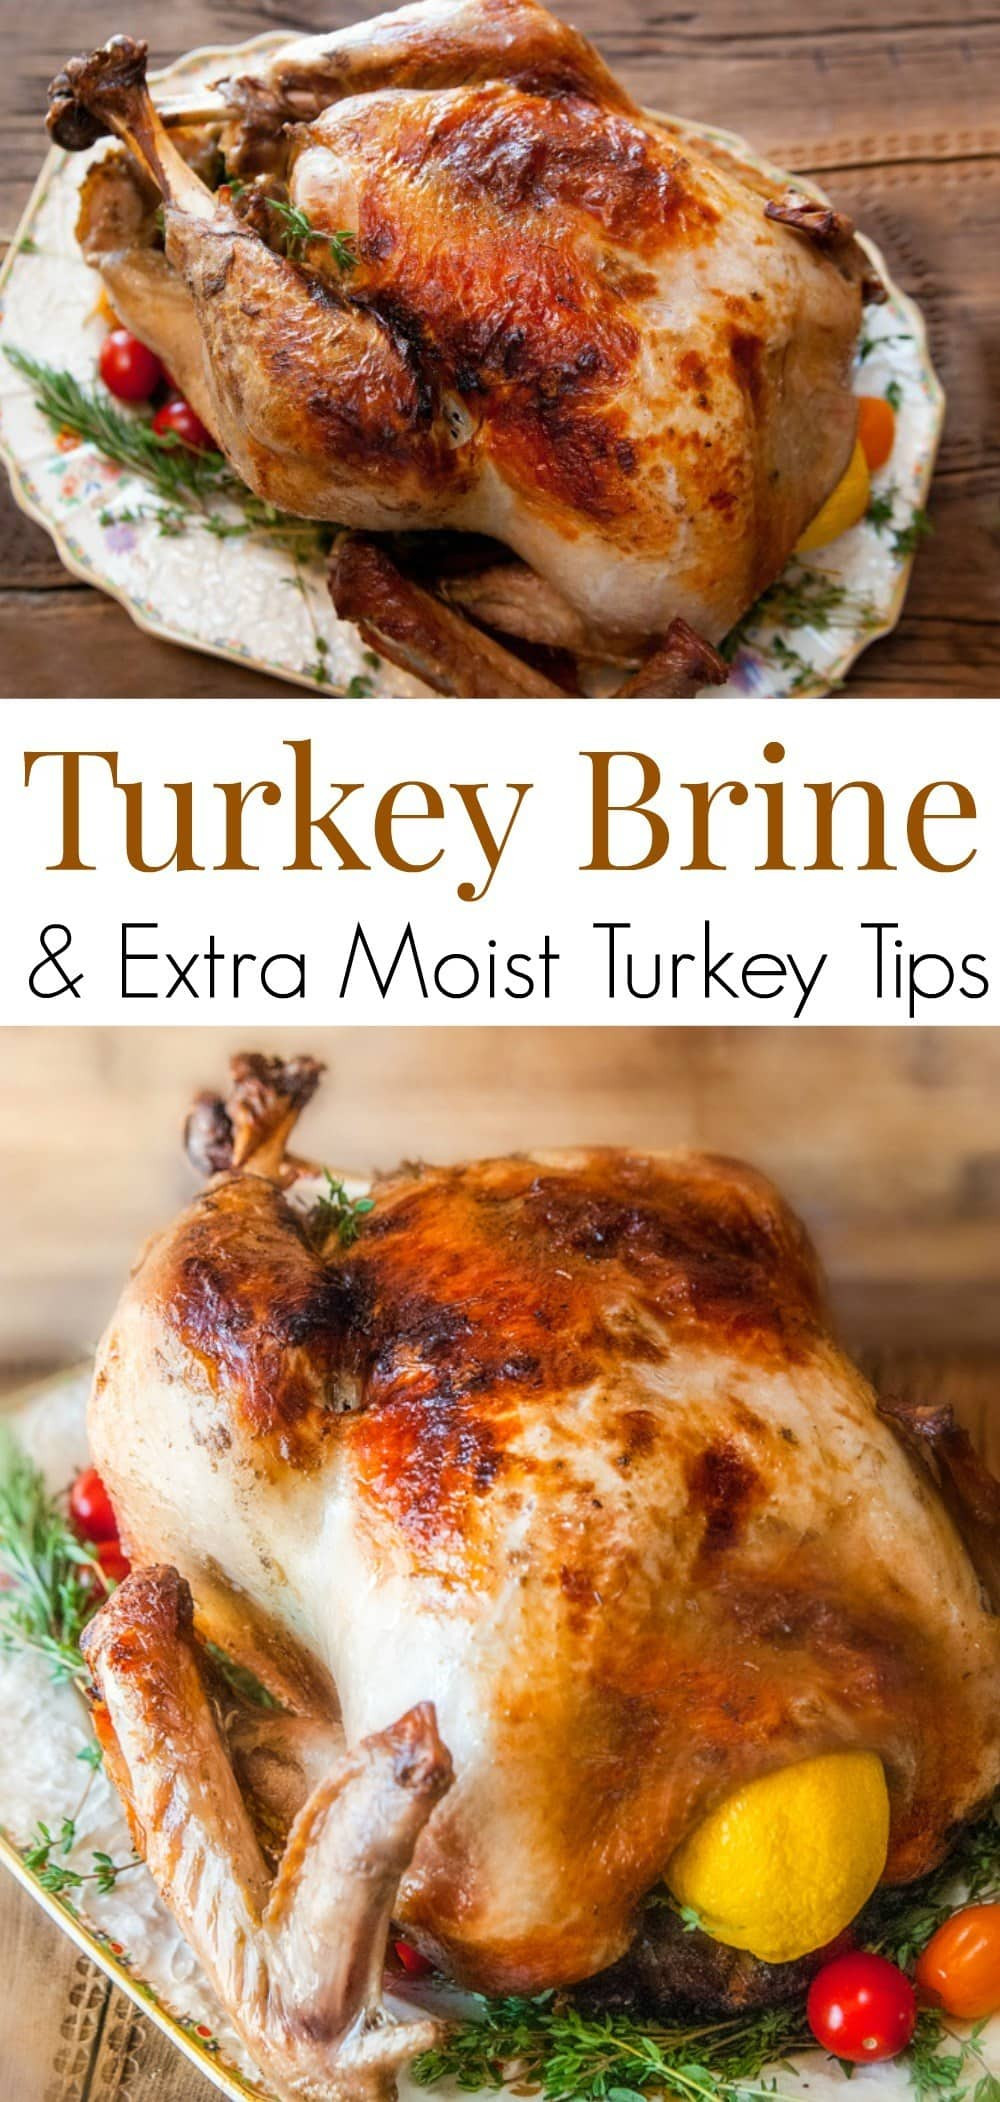 Best Thanksgiving Turkey Brine
 Citrus & Herb Turkey Brine Recipe for a Juicy Thanksgiving